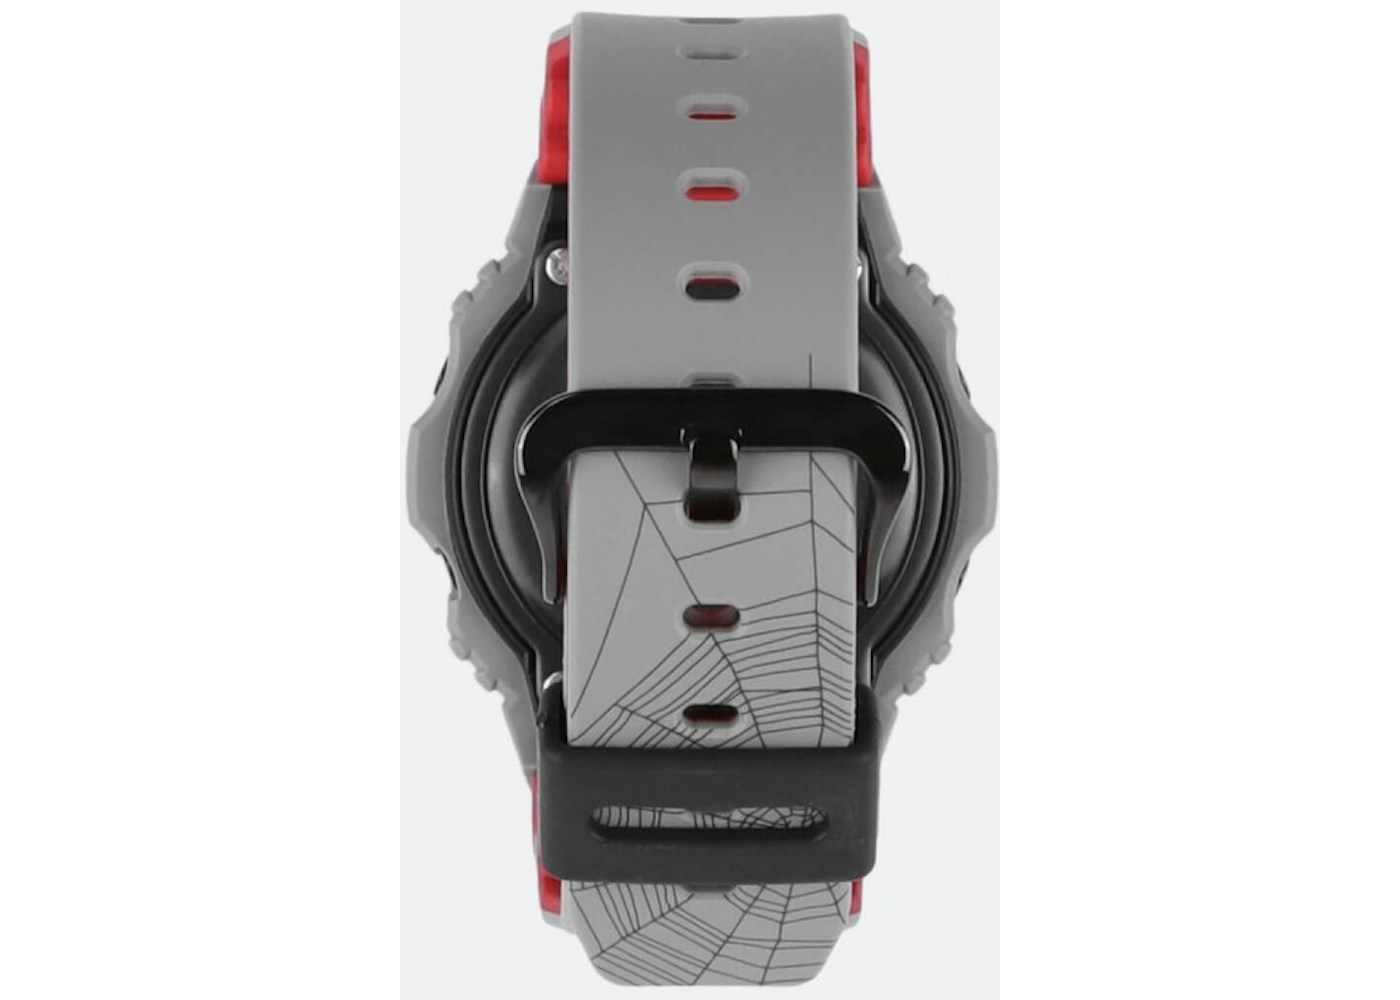 Casio G-Shock x Sneaker Freaker x Stance DW-5700SF - 49mm in Rubber